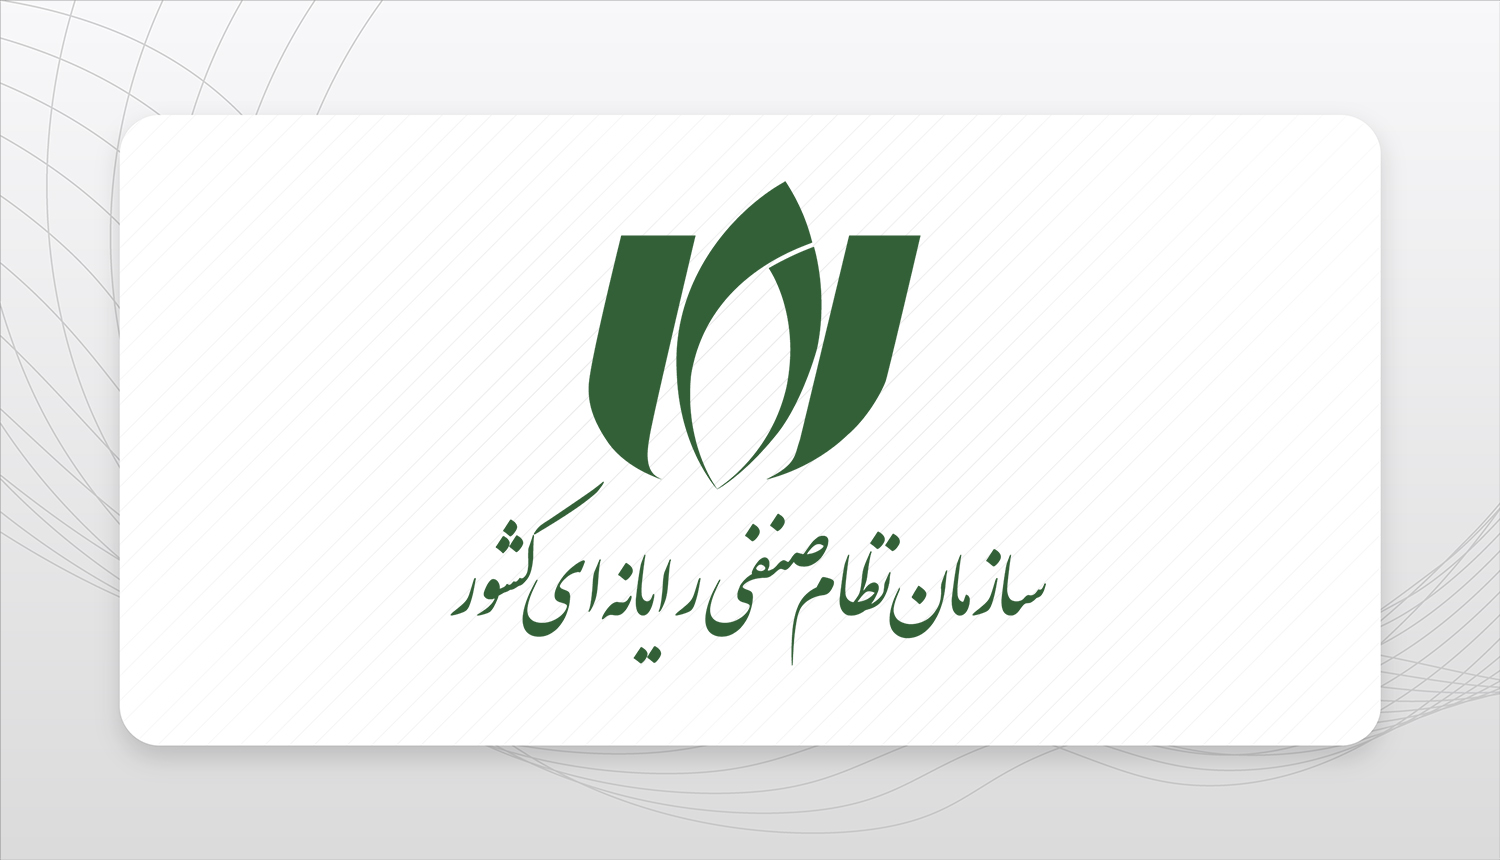 سروهانا عضو سازمان نظام صنفی رایانه ای کشور در استان تهران گردید